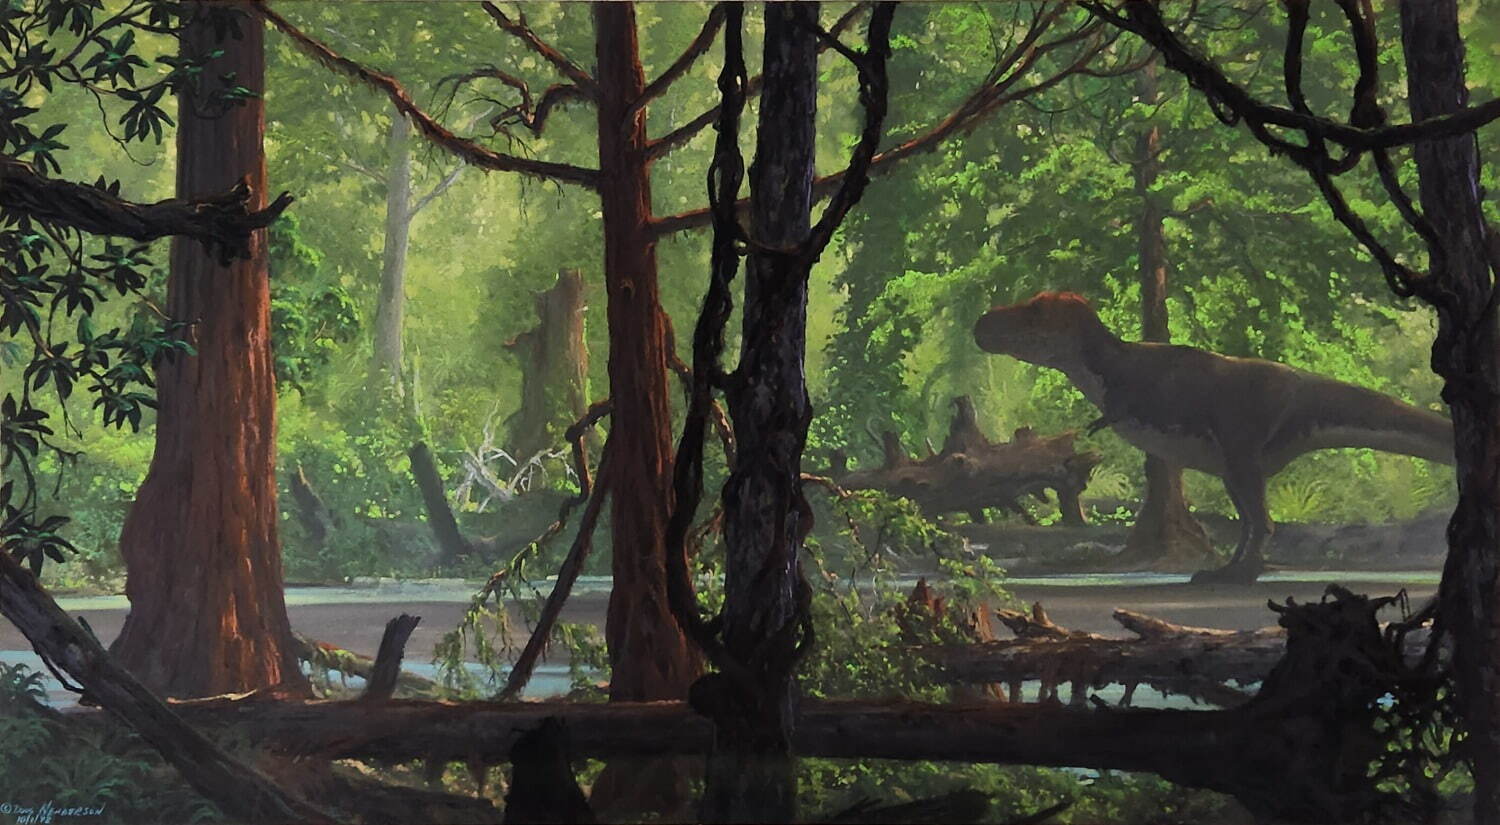 ダグラス・ヘンダーソン《ティラノサウルス》1992年 パステル・紙 36.8×68.6㎝ インディアナポリス子供博物館(ランツェンドルフ・コレクション) Courtesy of The Children